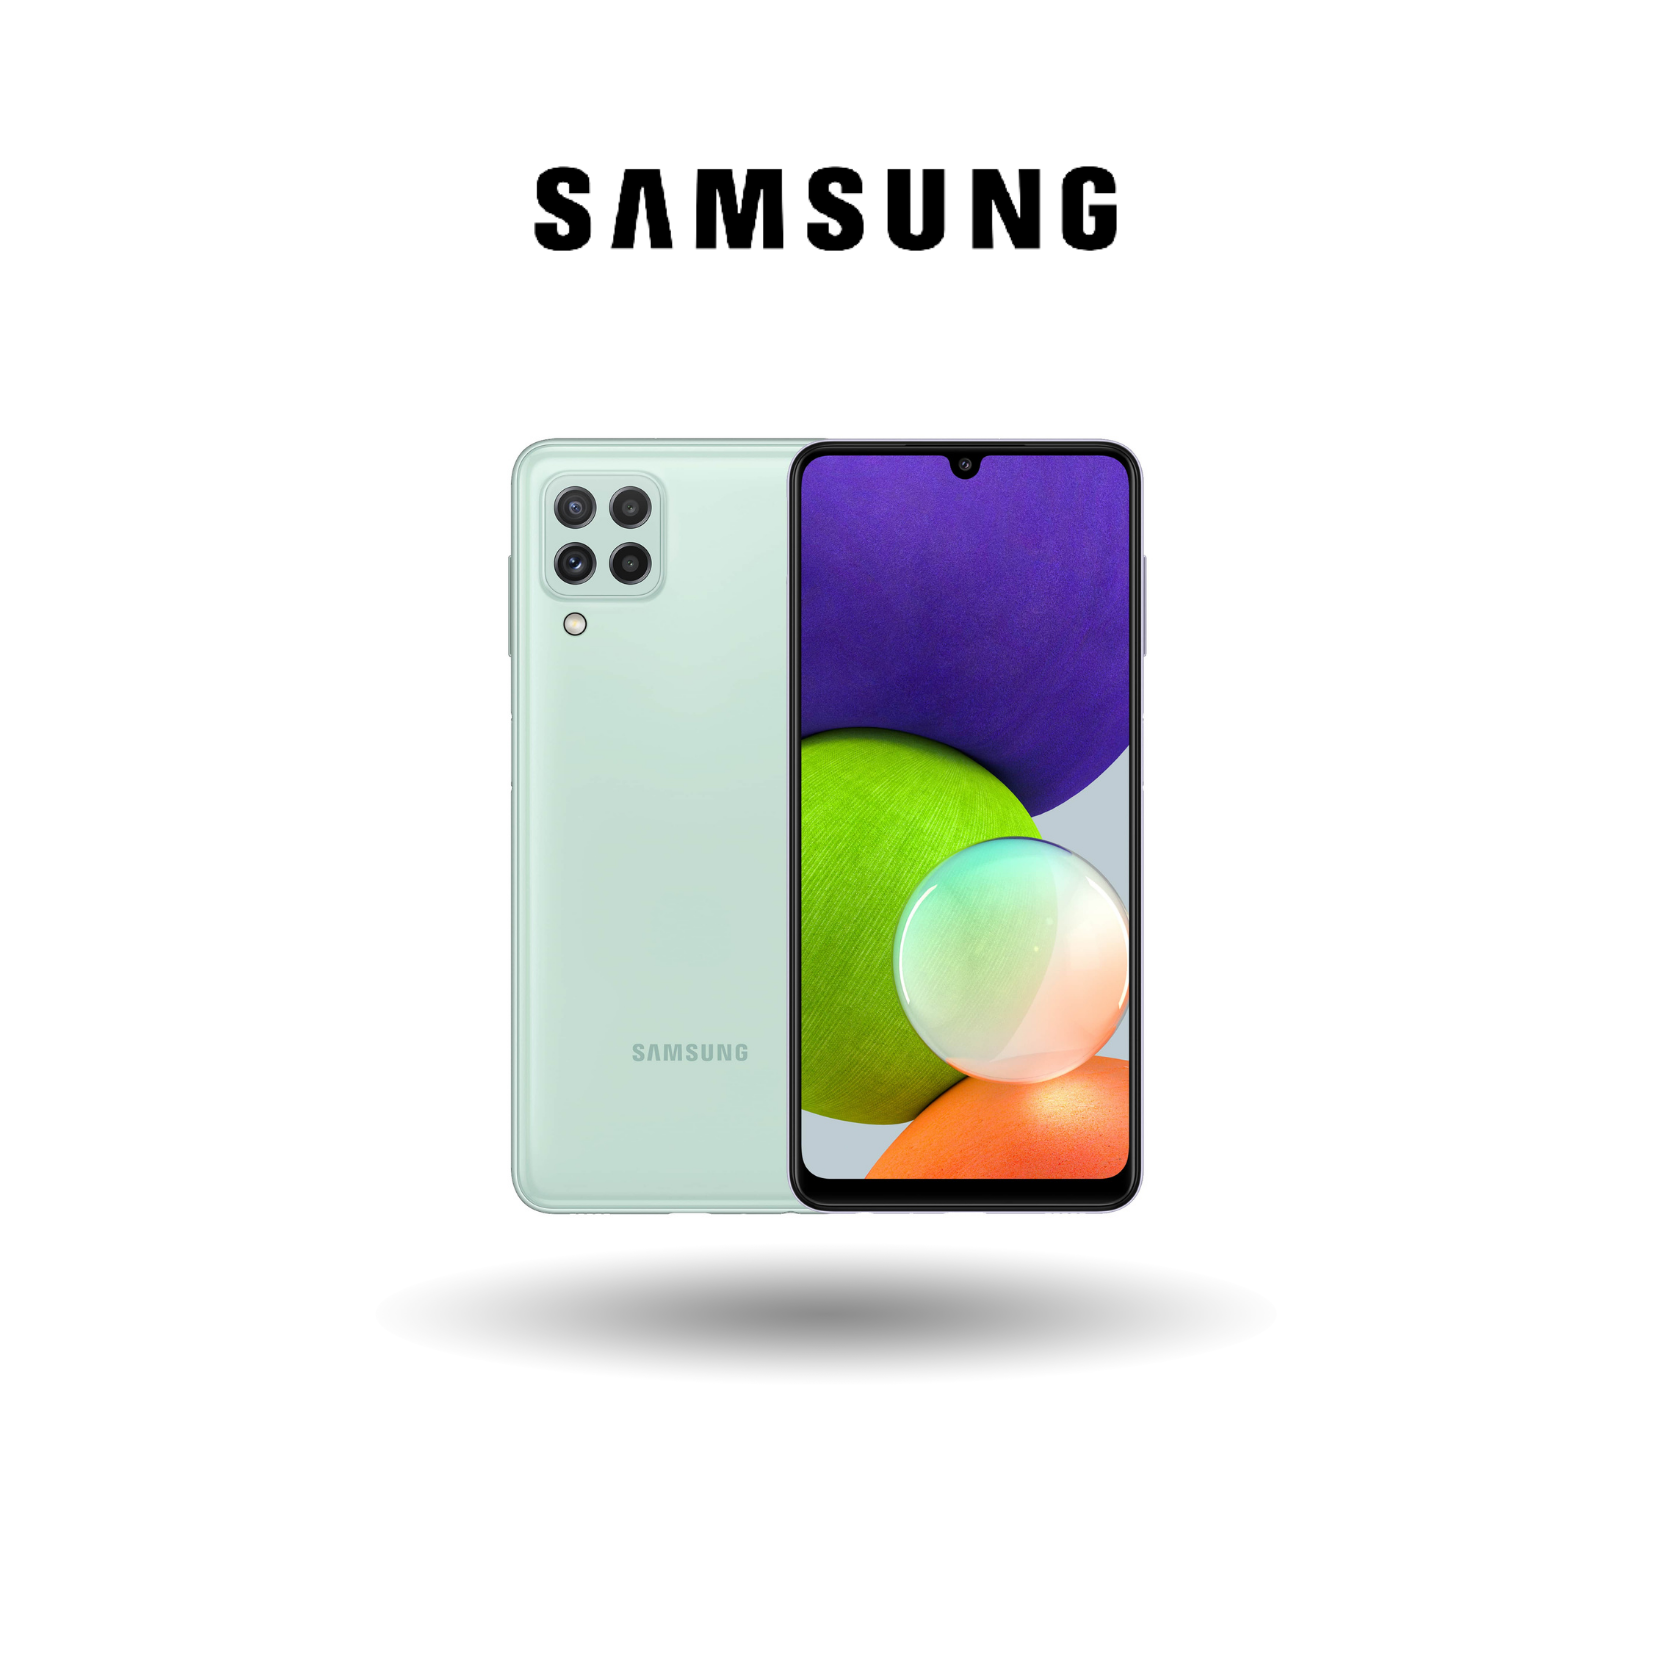 Samsung Galaxy A22 LTE - 6GB RAM + 128GB ROM  Helio G80  6.4” HD+ HD+ Super AMOLED Display